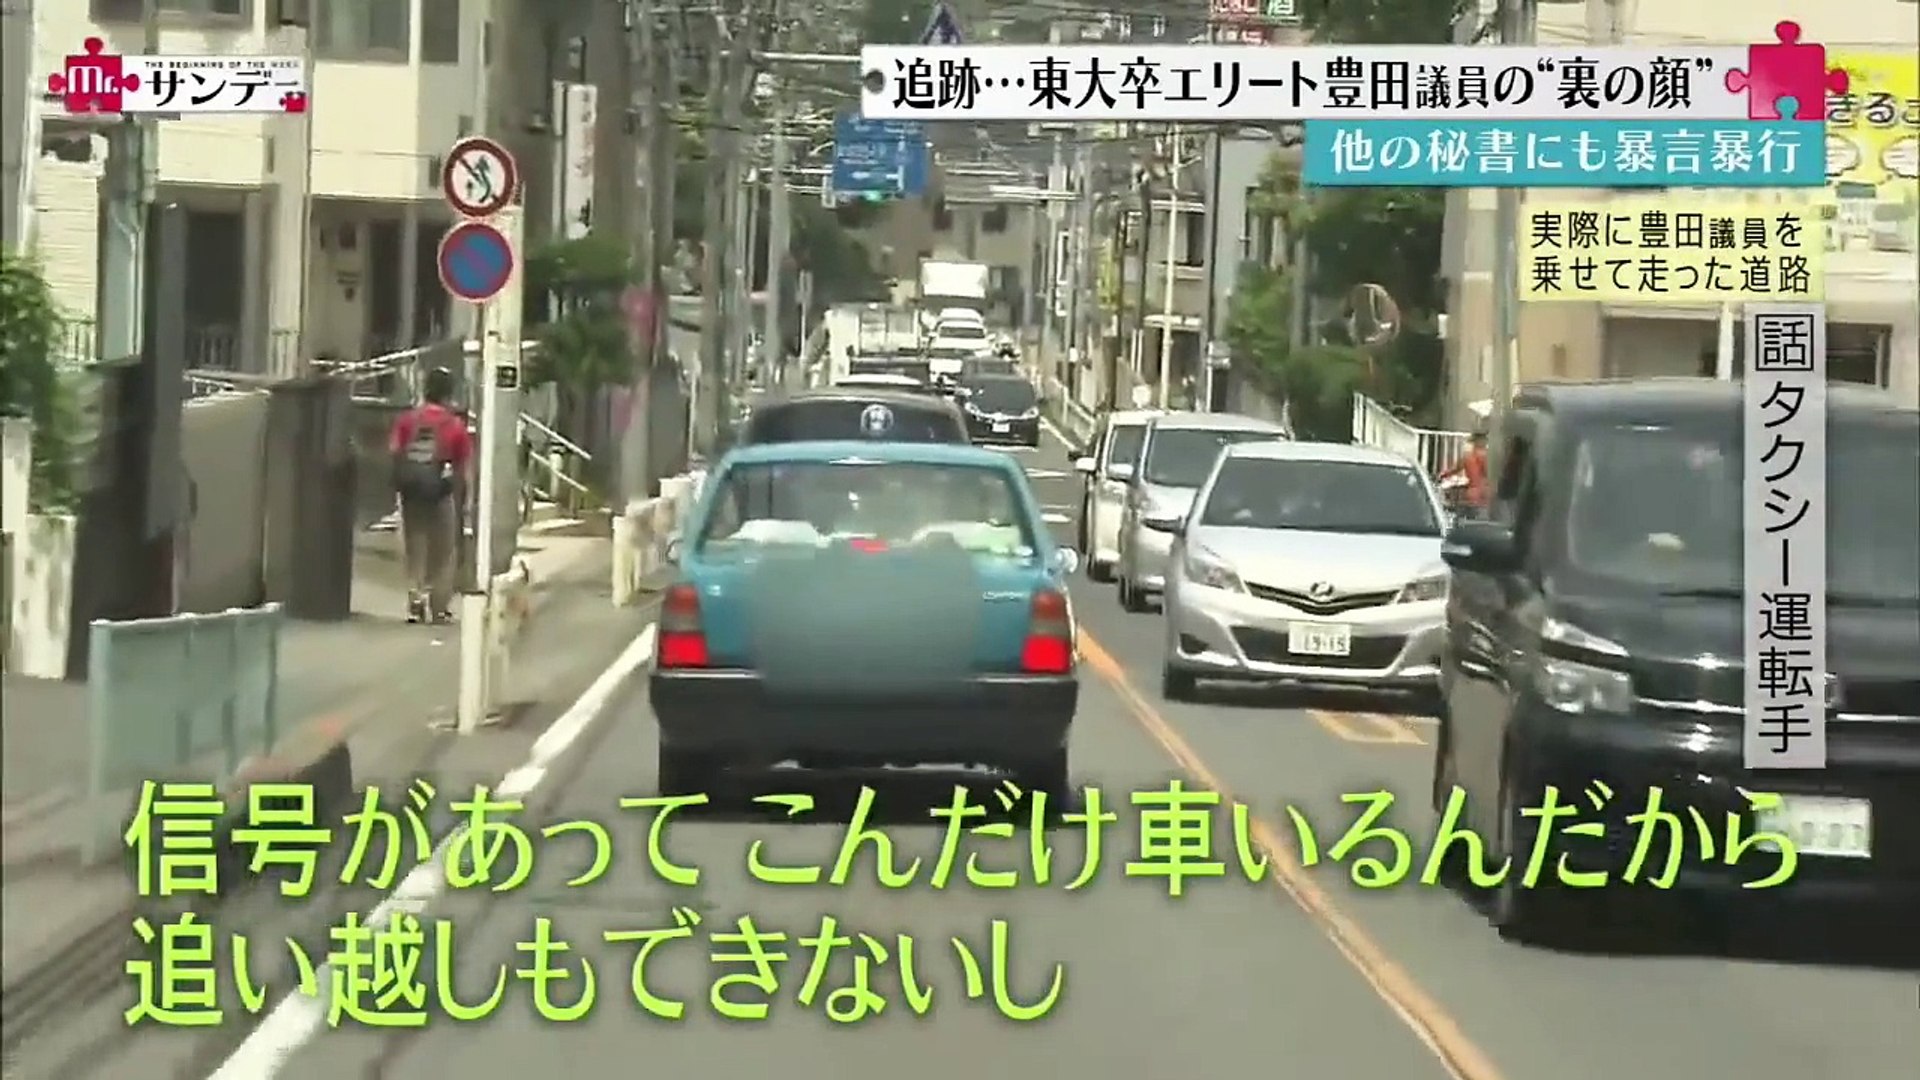 日常から違法行為を命じる 凶暴代議士豊田真由子 タクシードライバー 驚きの証言 Video Dailymotion